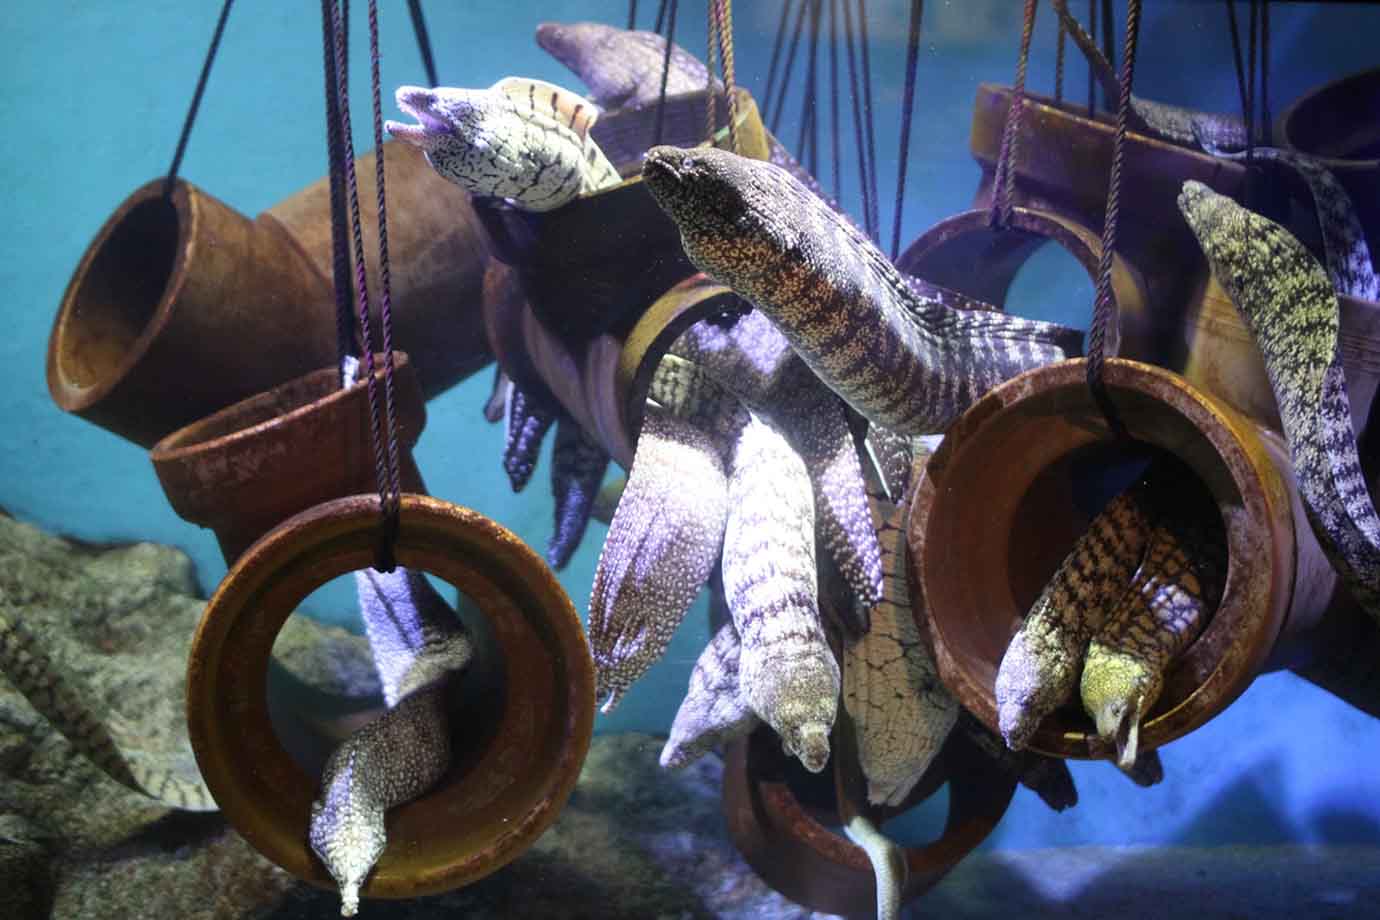 東海エリアでおすすめの水族館、2つ目は「竹島水族館」。